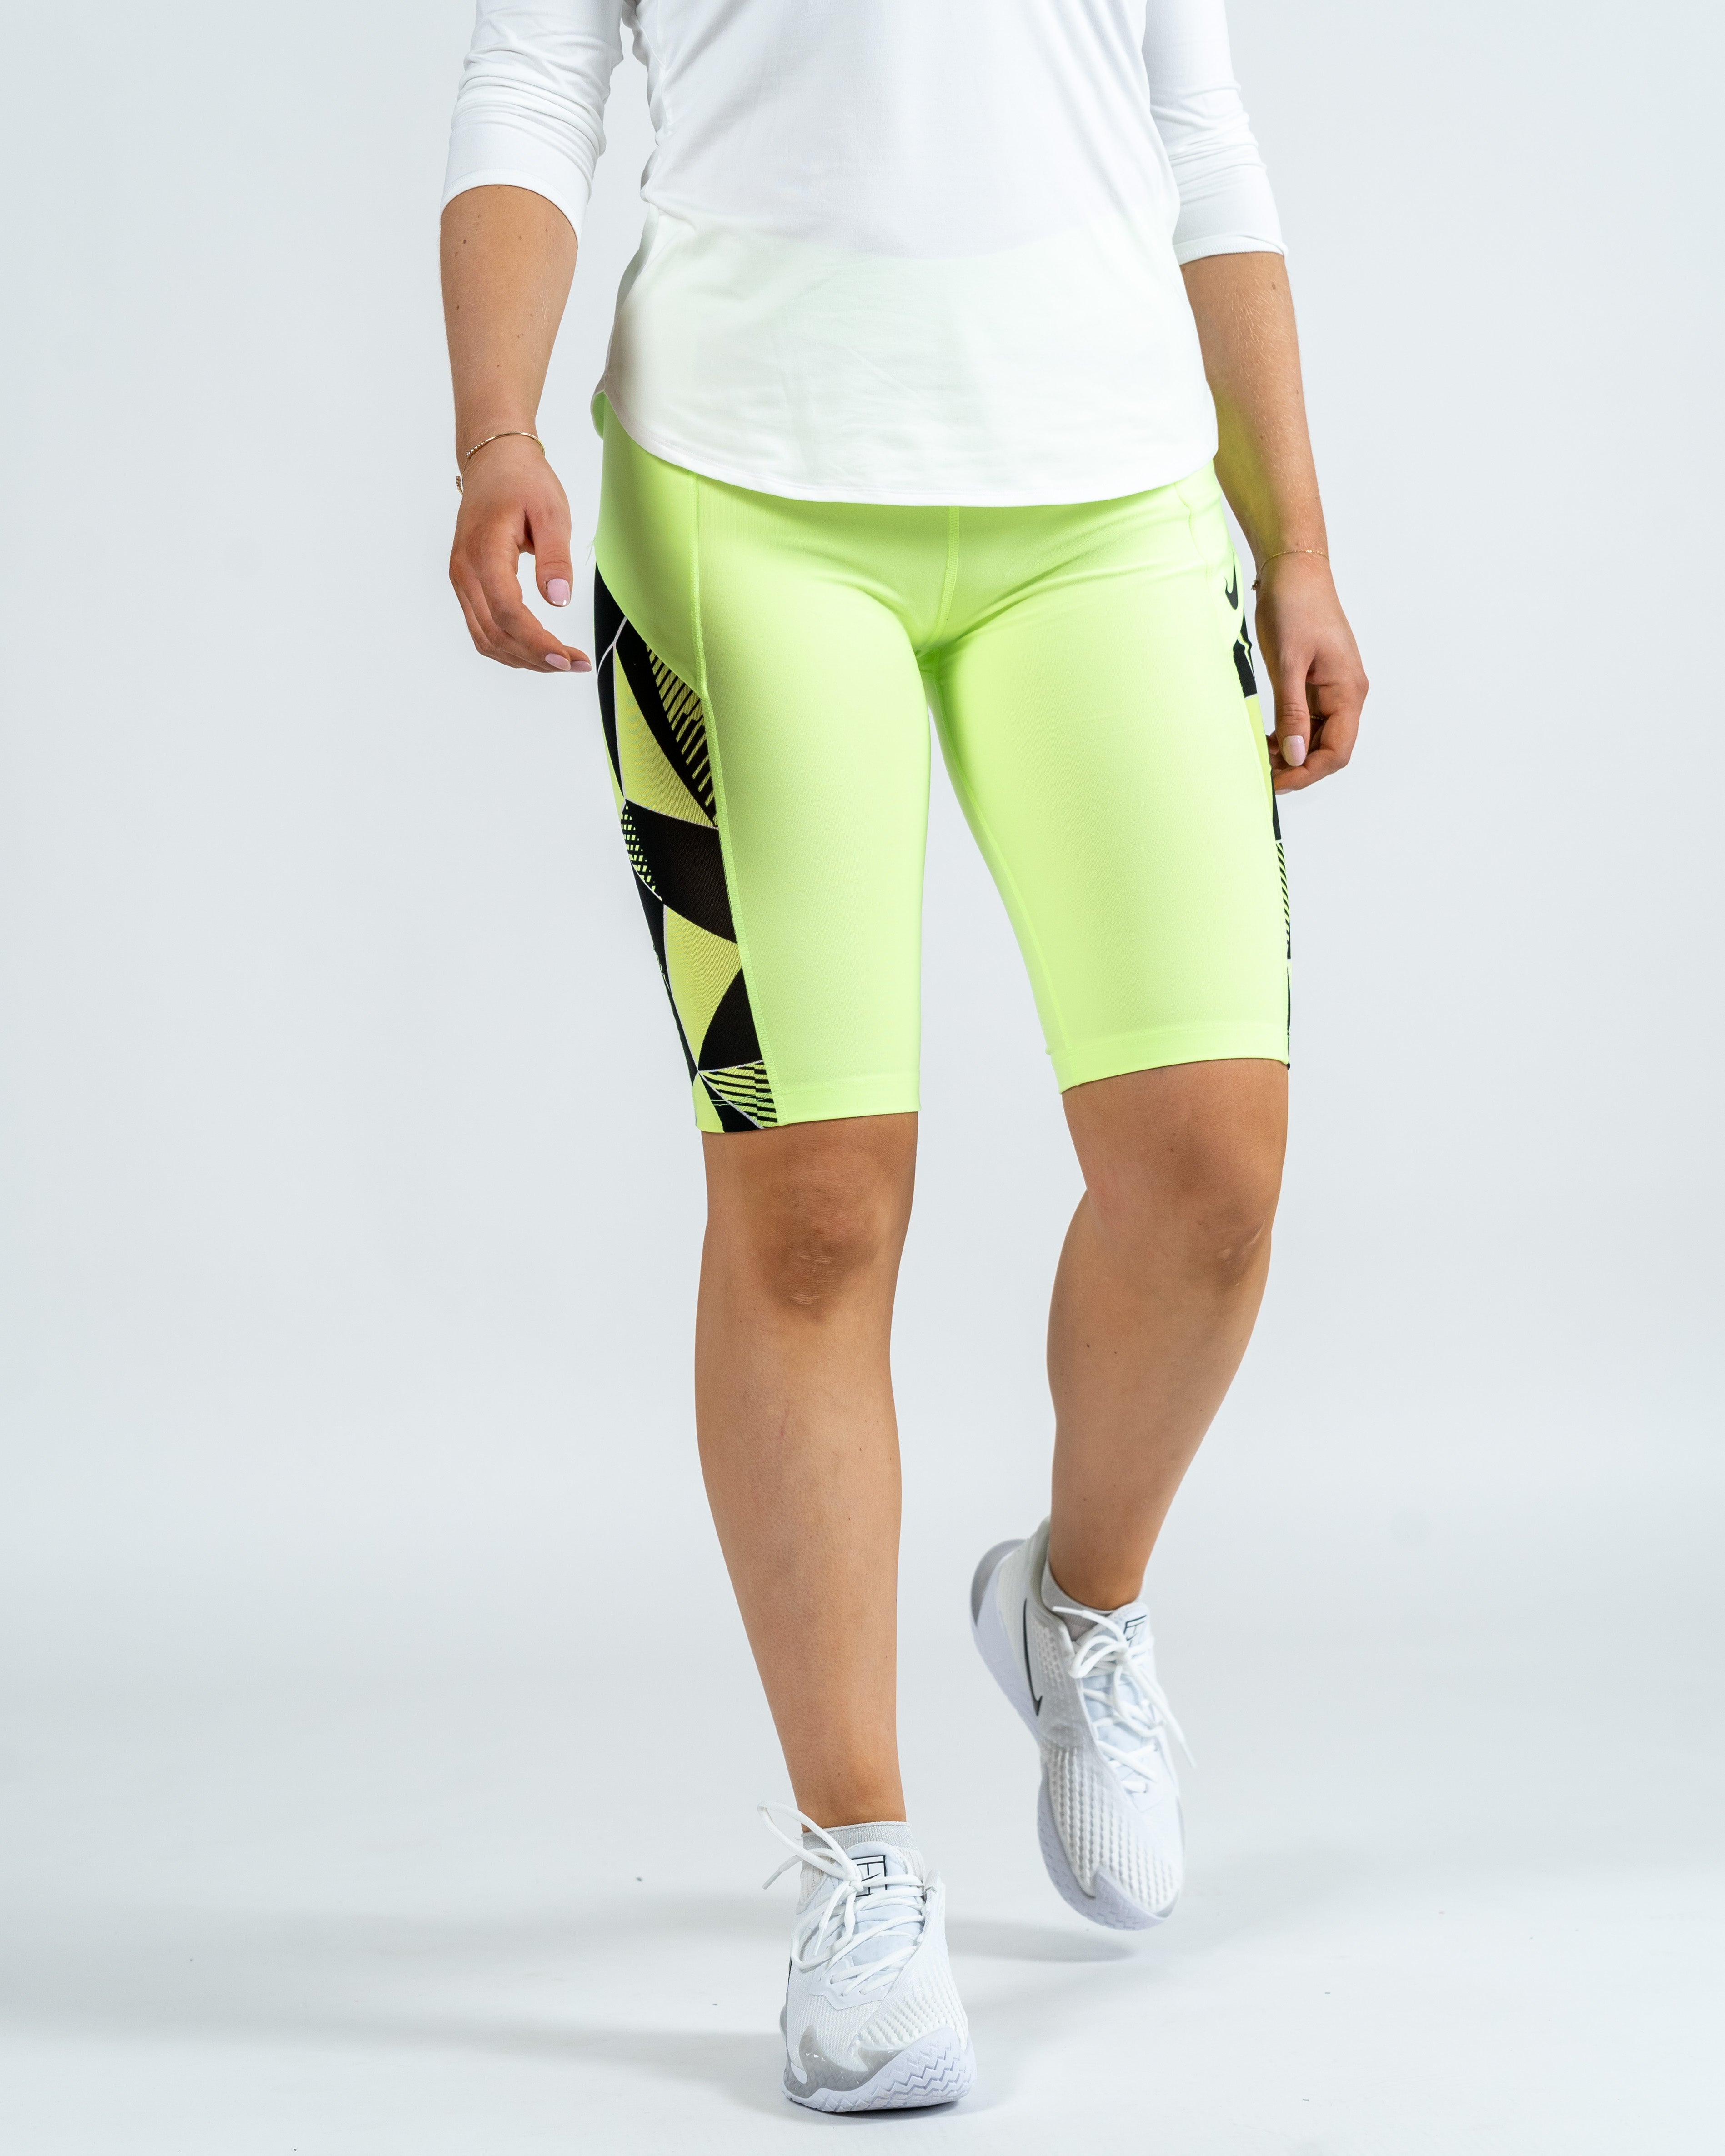 Nike Kvinde Capri Tights Grøn/Neon